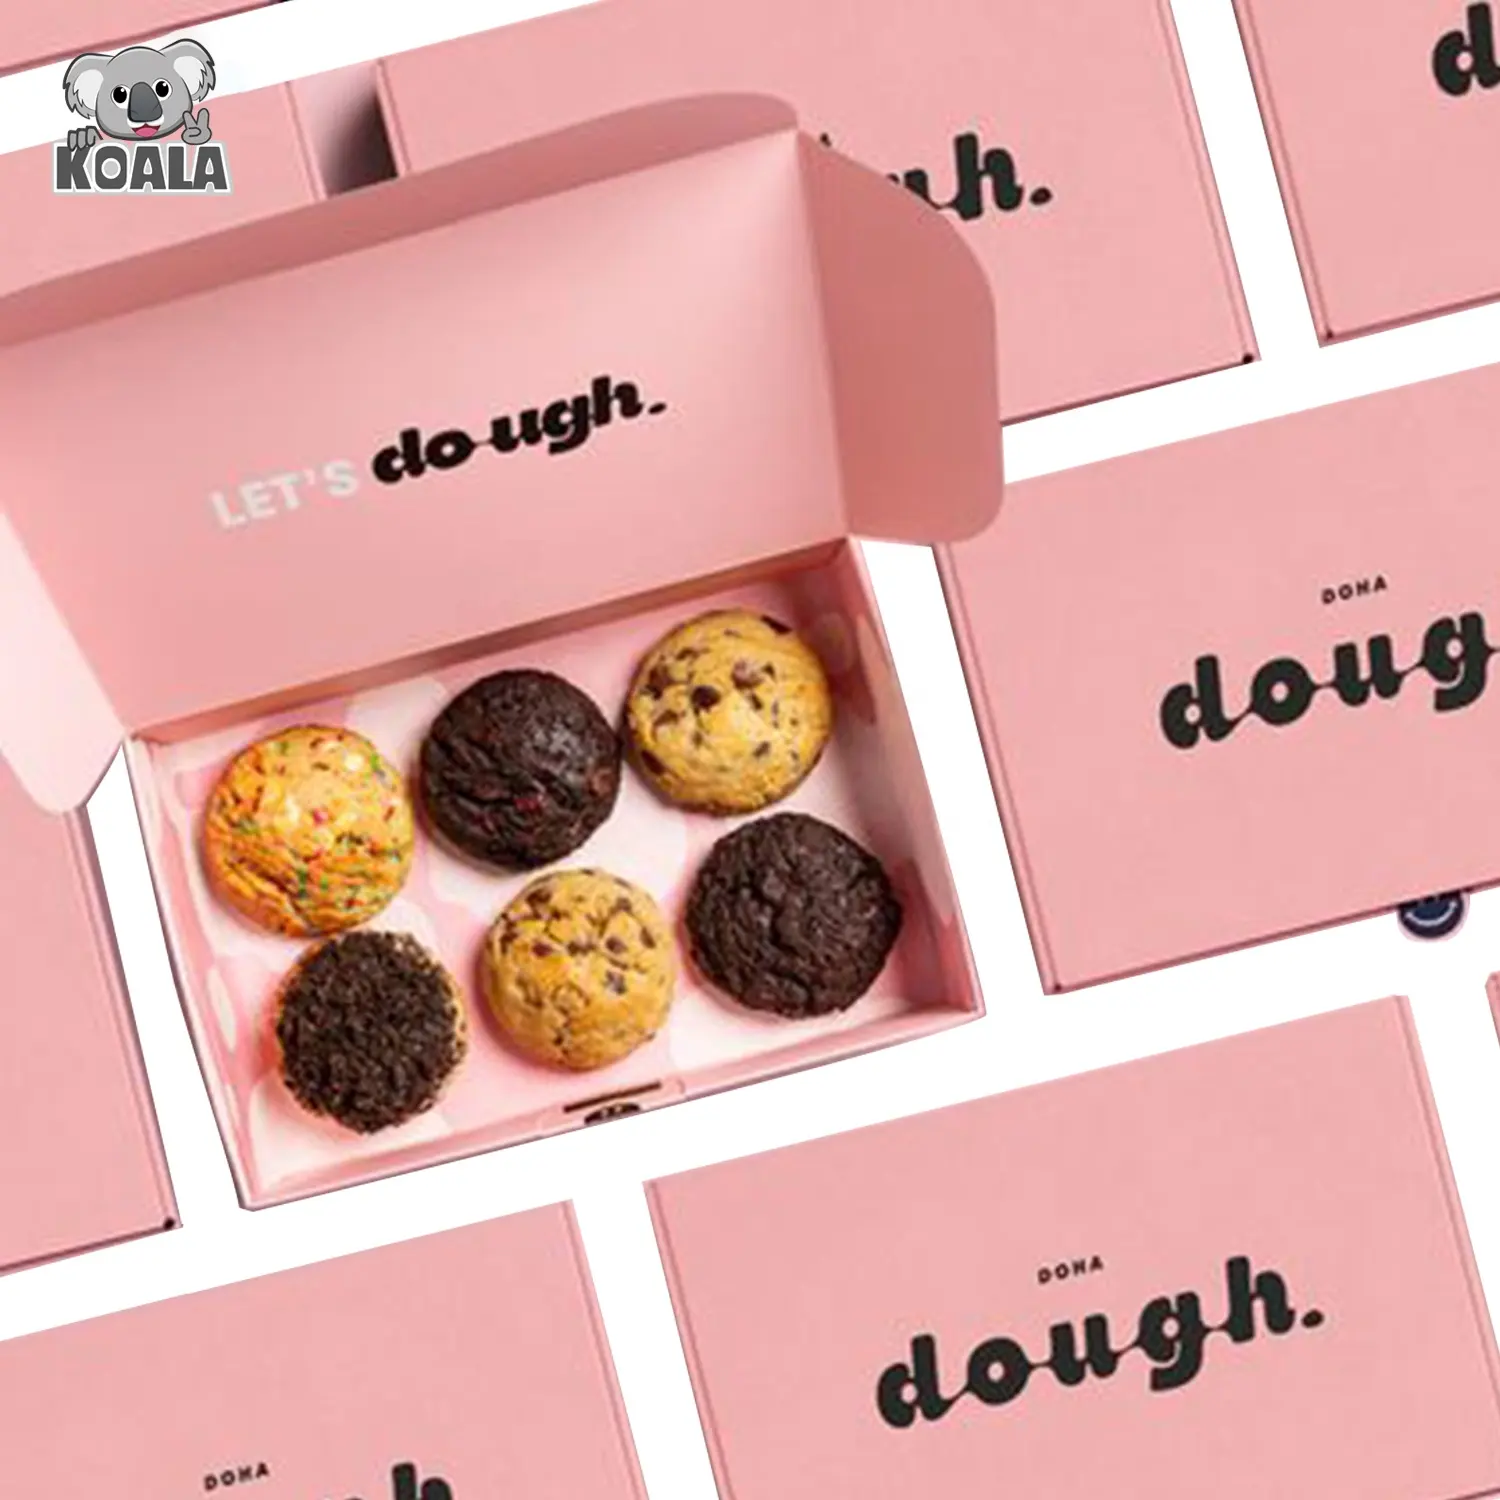 사용자 정의 식품 학년 인쇄 럭셔리 도넛 쿠키 종이 사탕 건조 과일 스낵 상자 포장